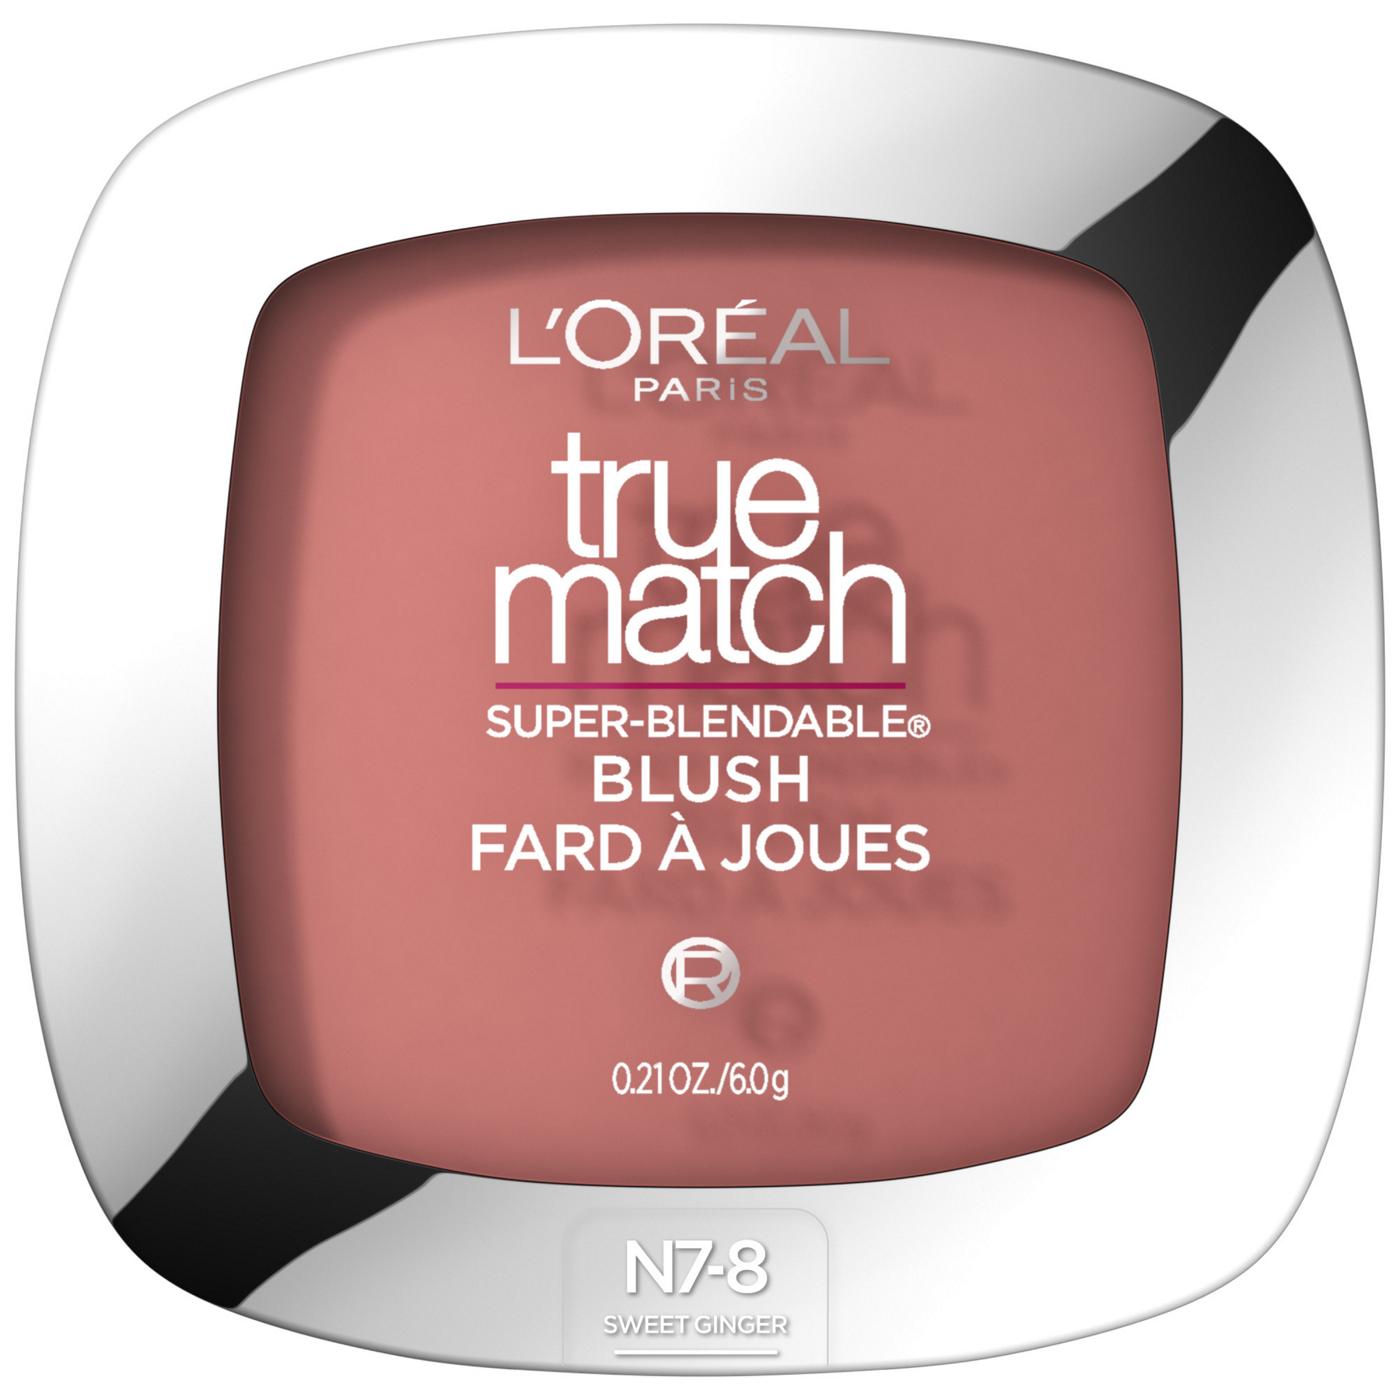 L'Oréal Paris True Match Super-Blendable Blush, Soft Powder Texture Sweet Ginger; image 1 of 5